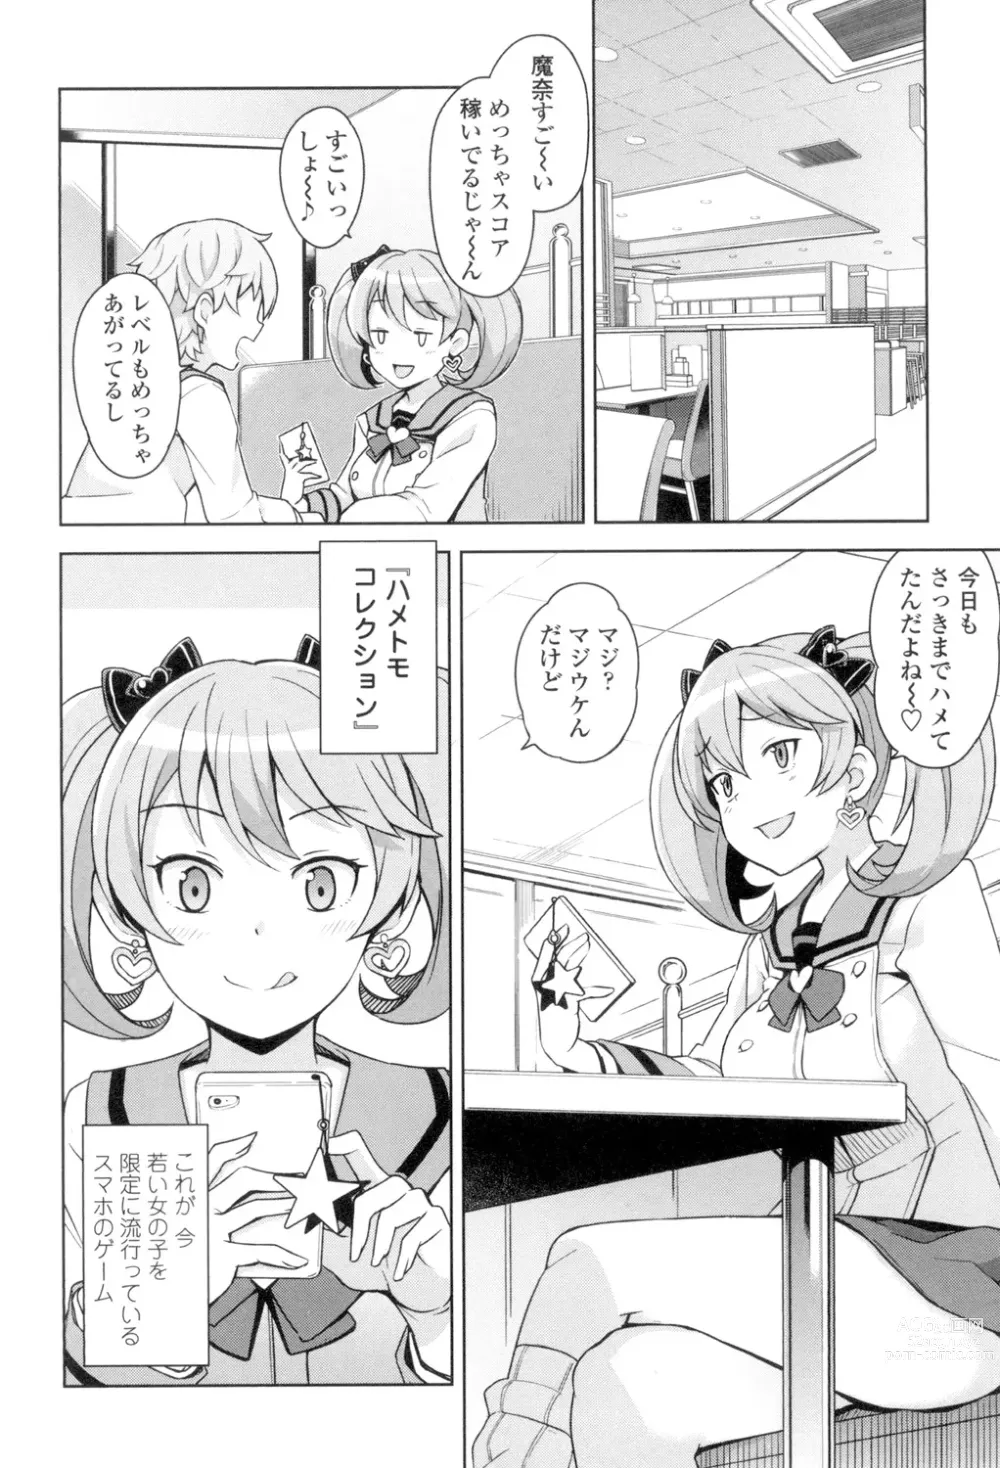 Page 7 of manga Hametomo Collection